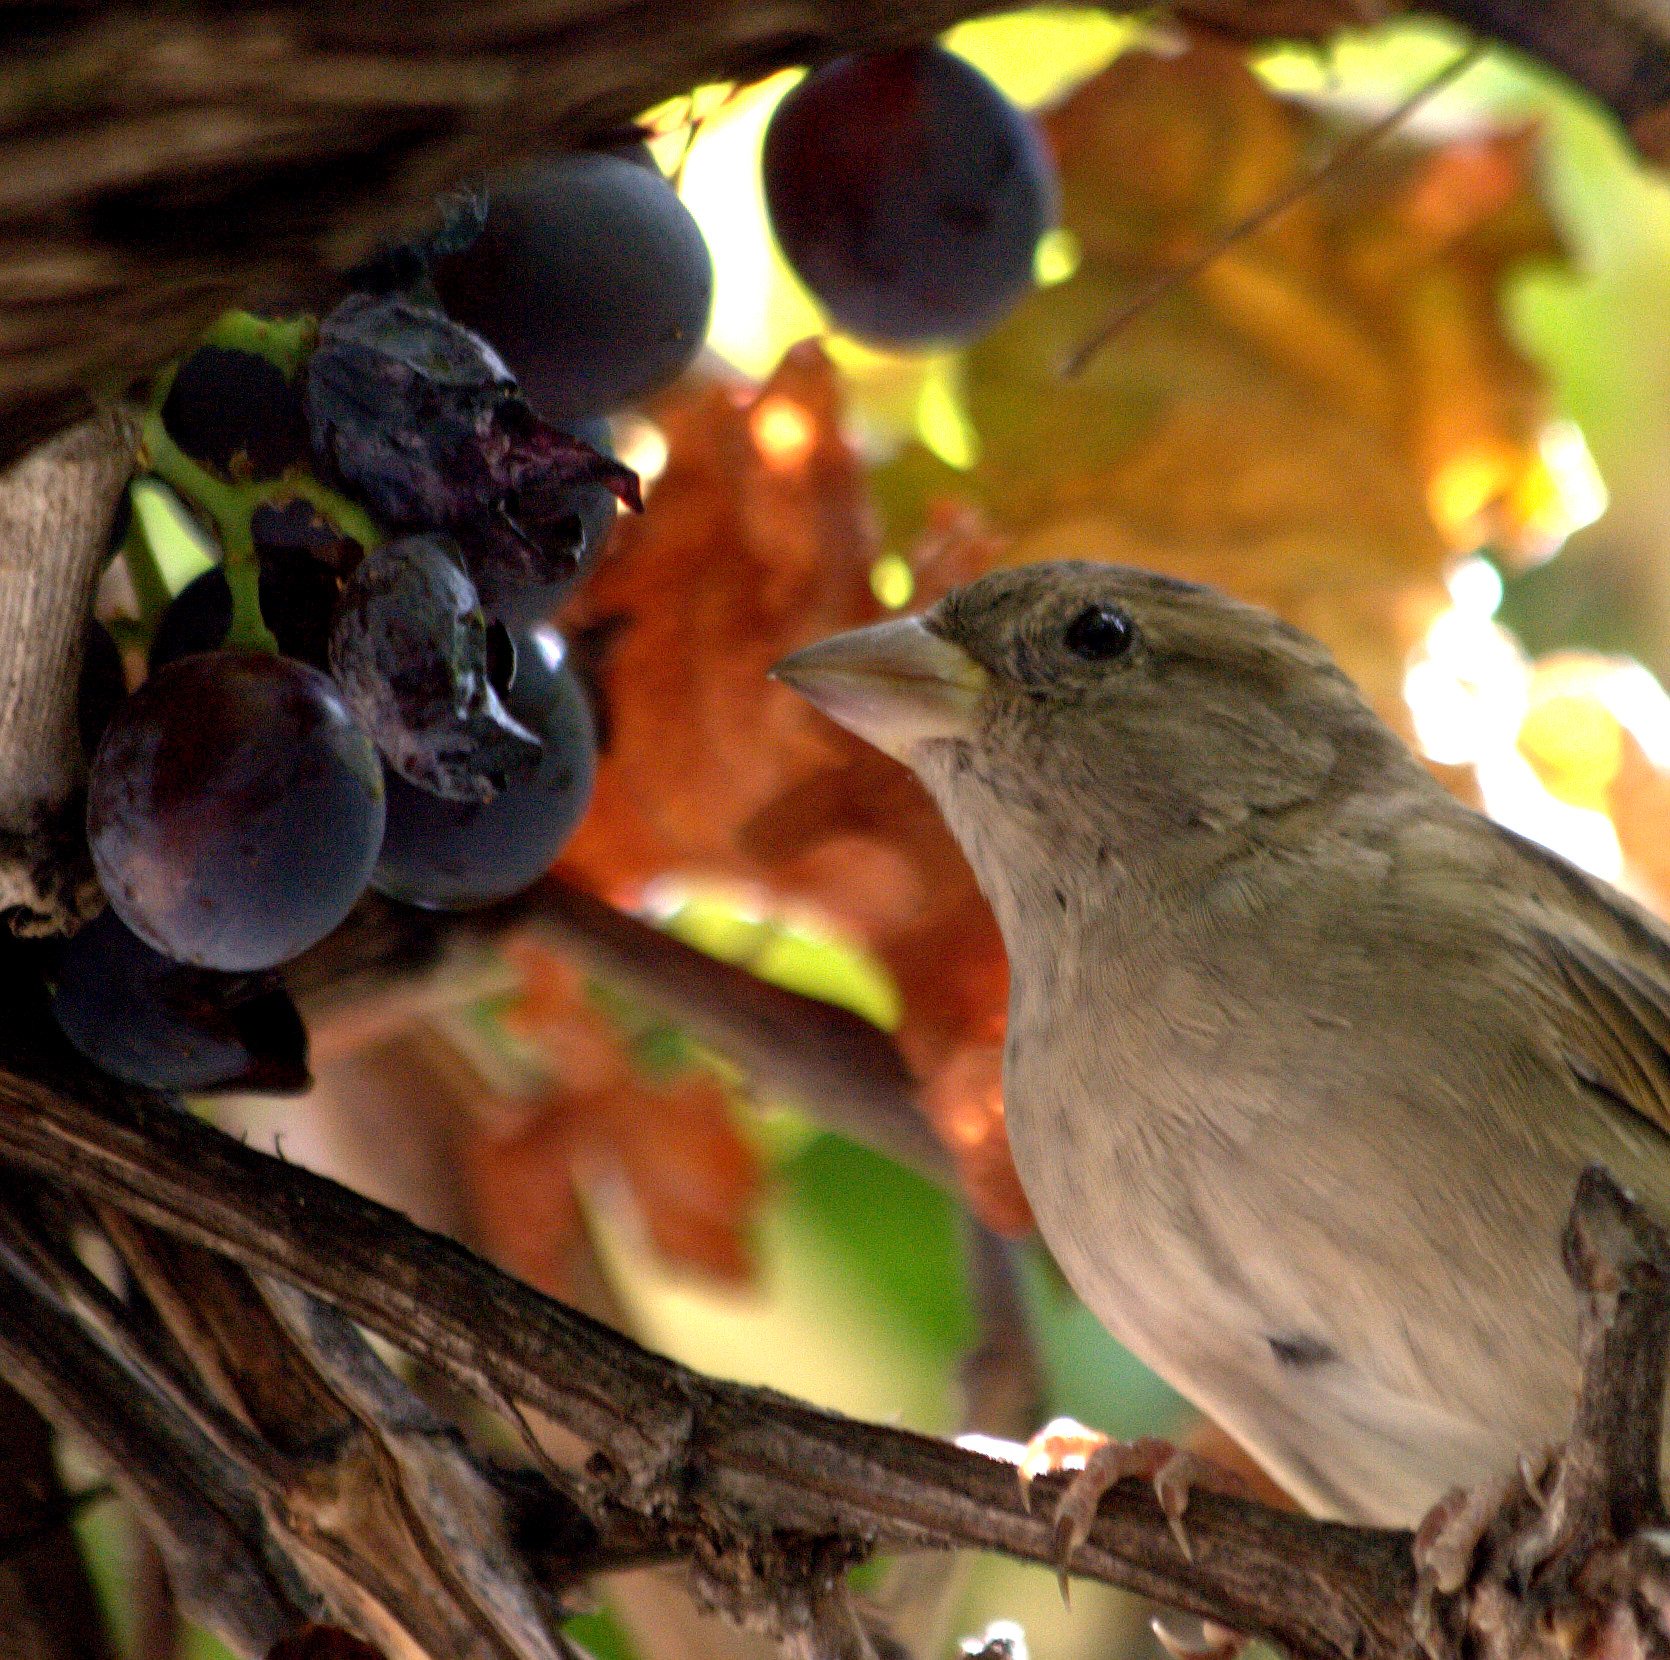 Gorrión común y uvas. Reparto las uvas con el gorrión, a cambio el elimina insectos.